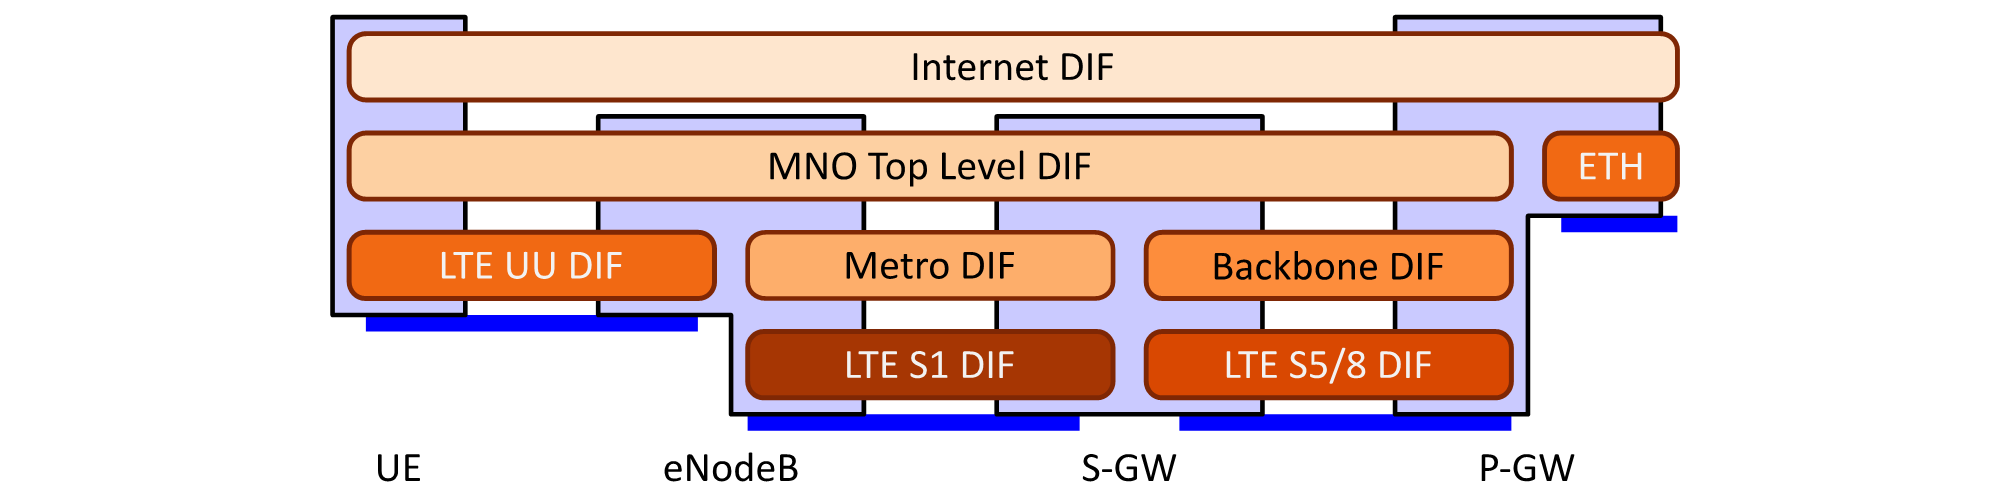 Network, CNOP, LTE: Schema